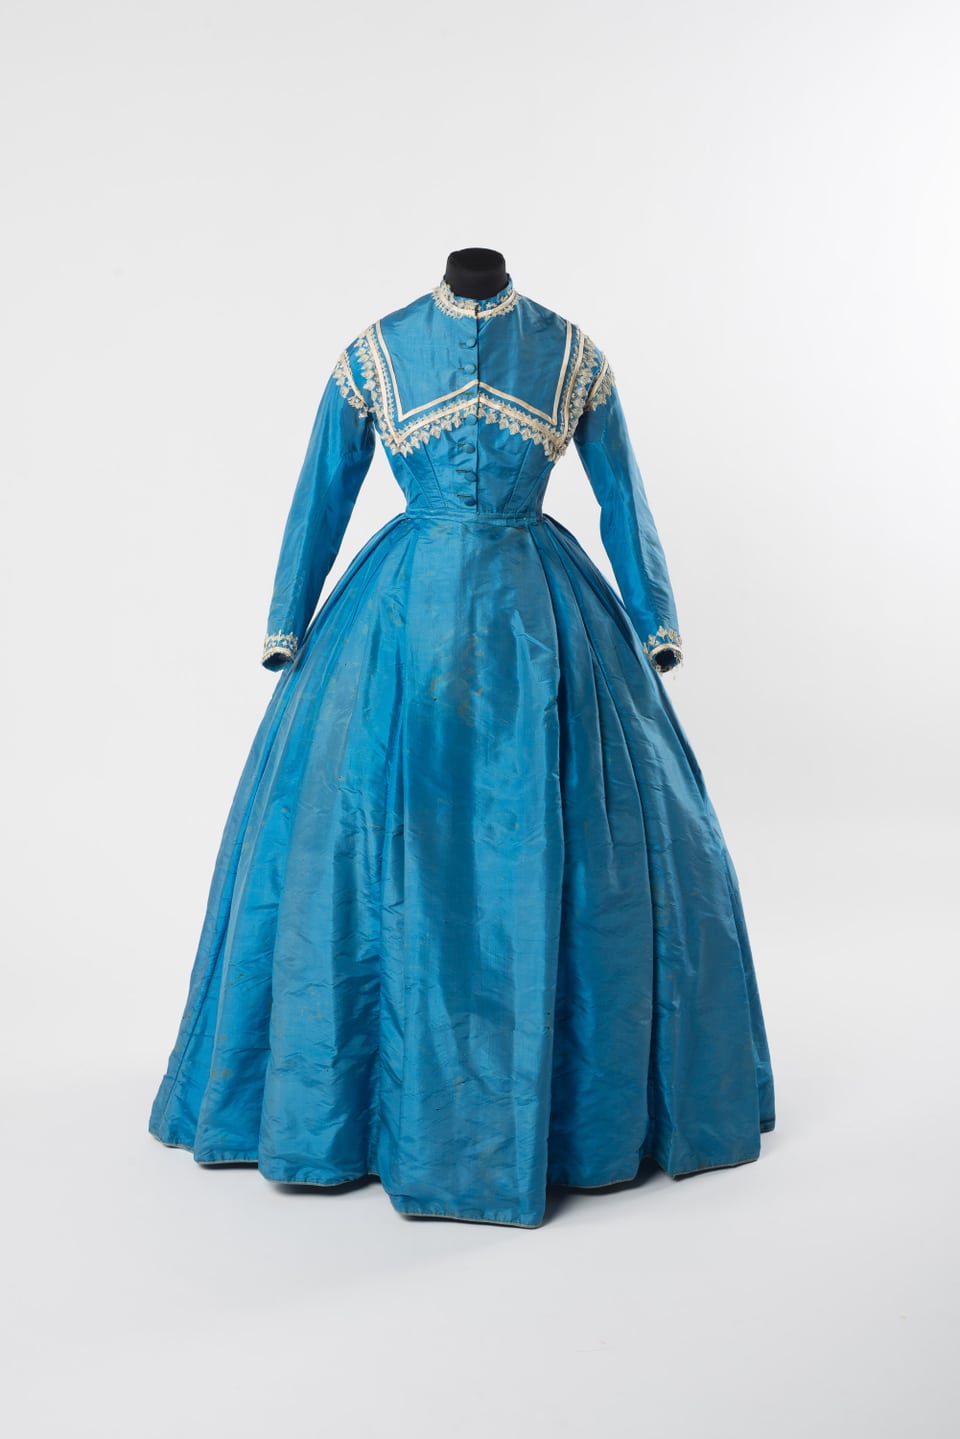 Blaues, hochgeschlossenes Kleid, lange Ärmel, mit weissen Spitzein verziwert